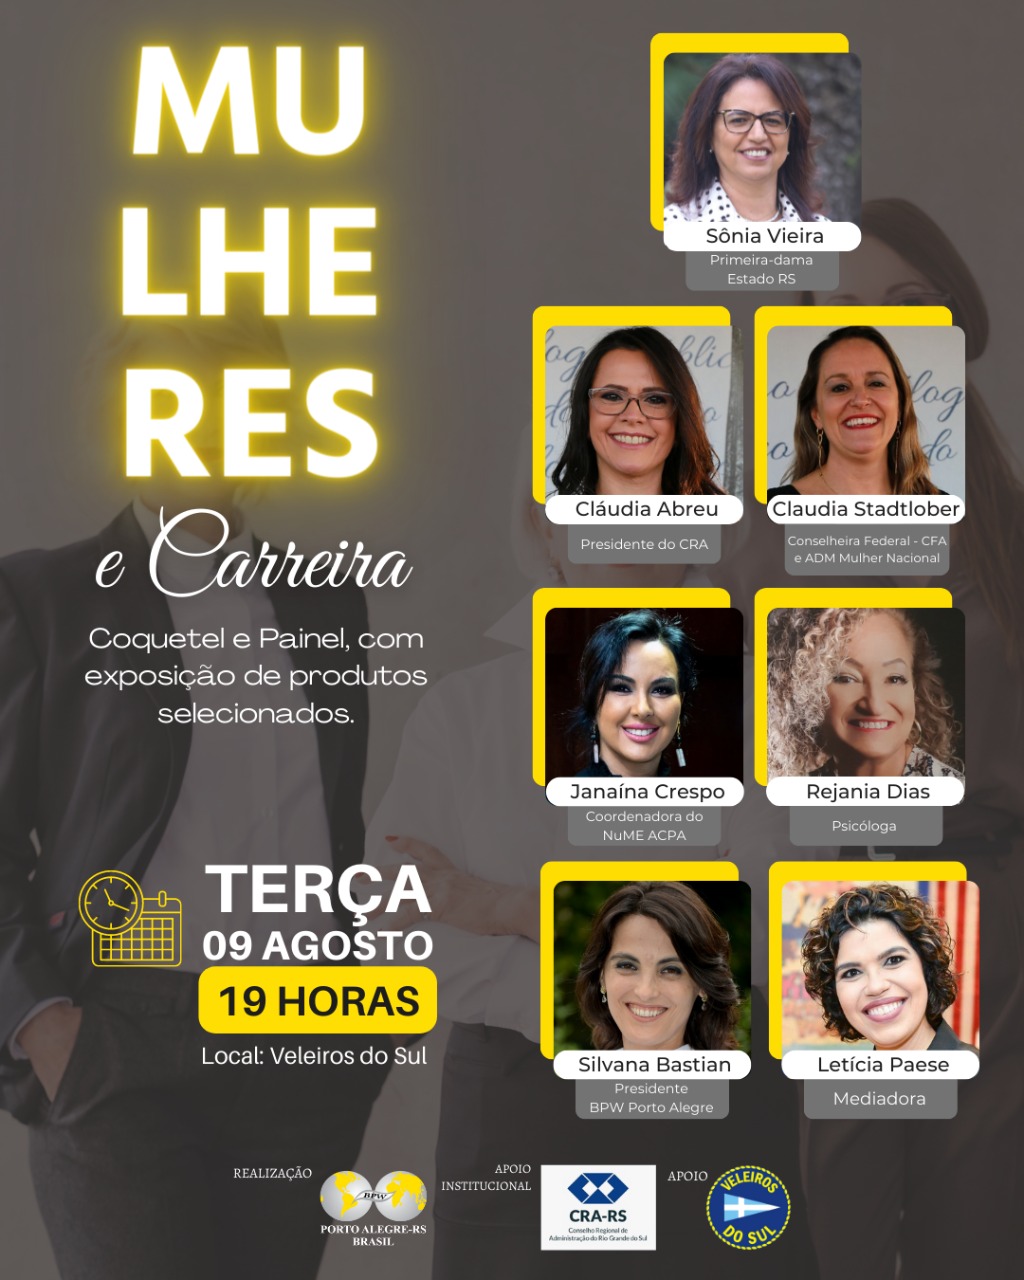 CRA-RS apoia evento sobre Mulheres e Carreira em Porto Alegre 